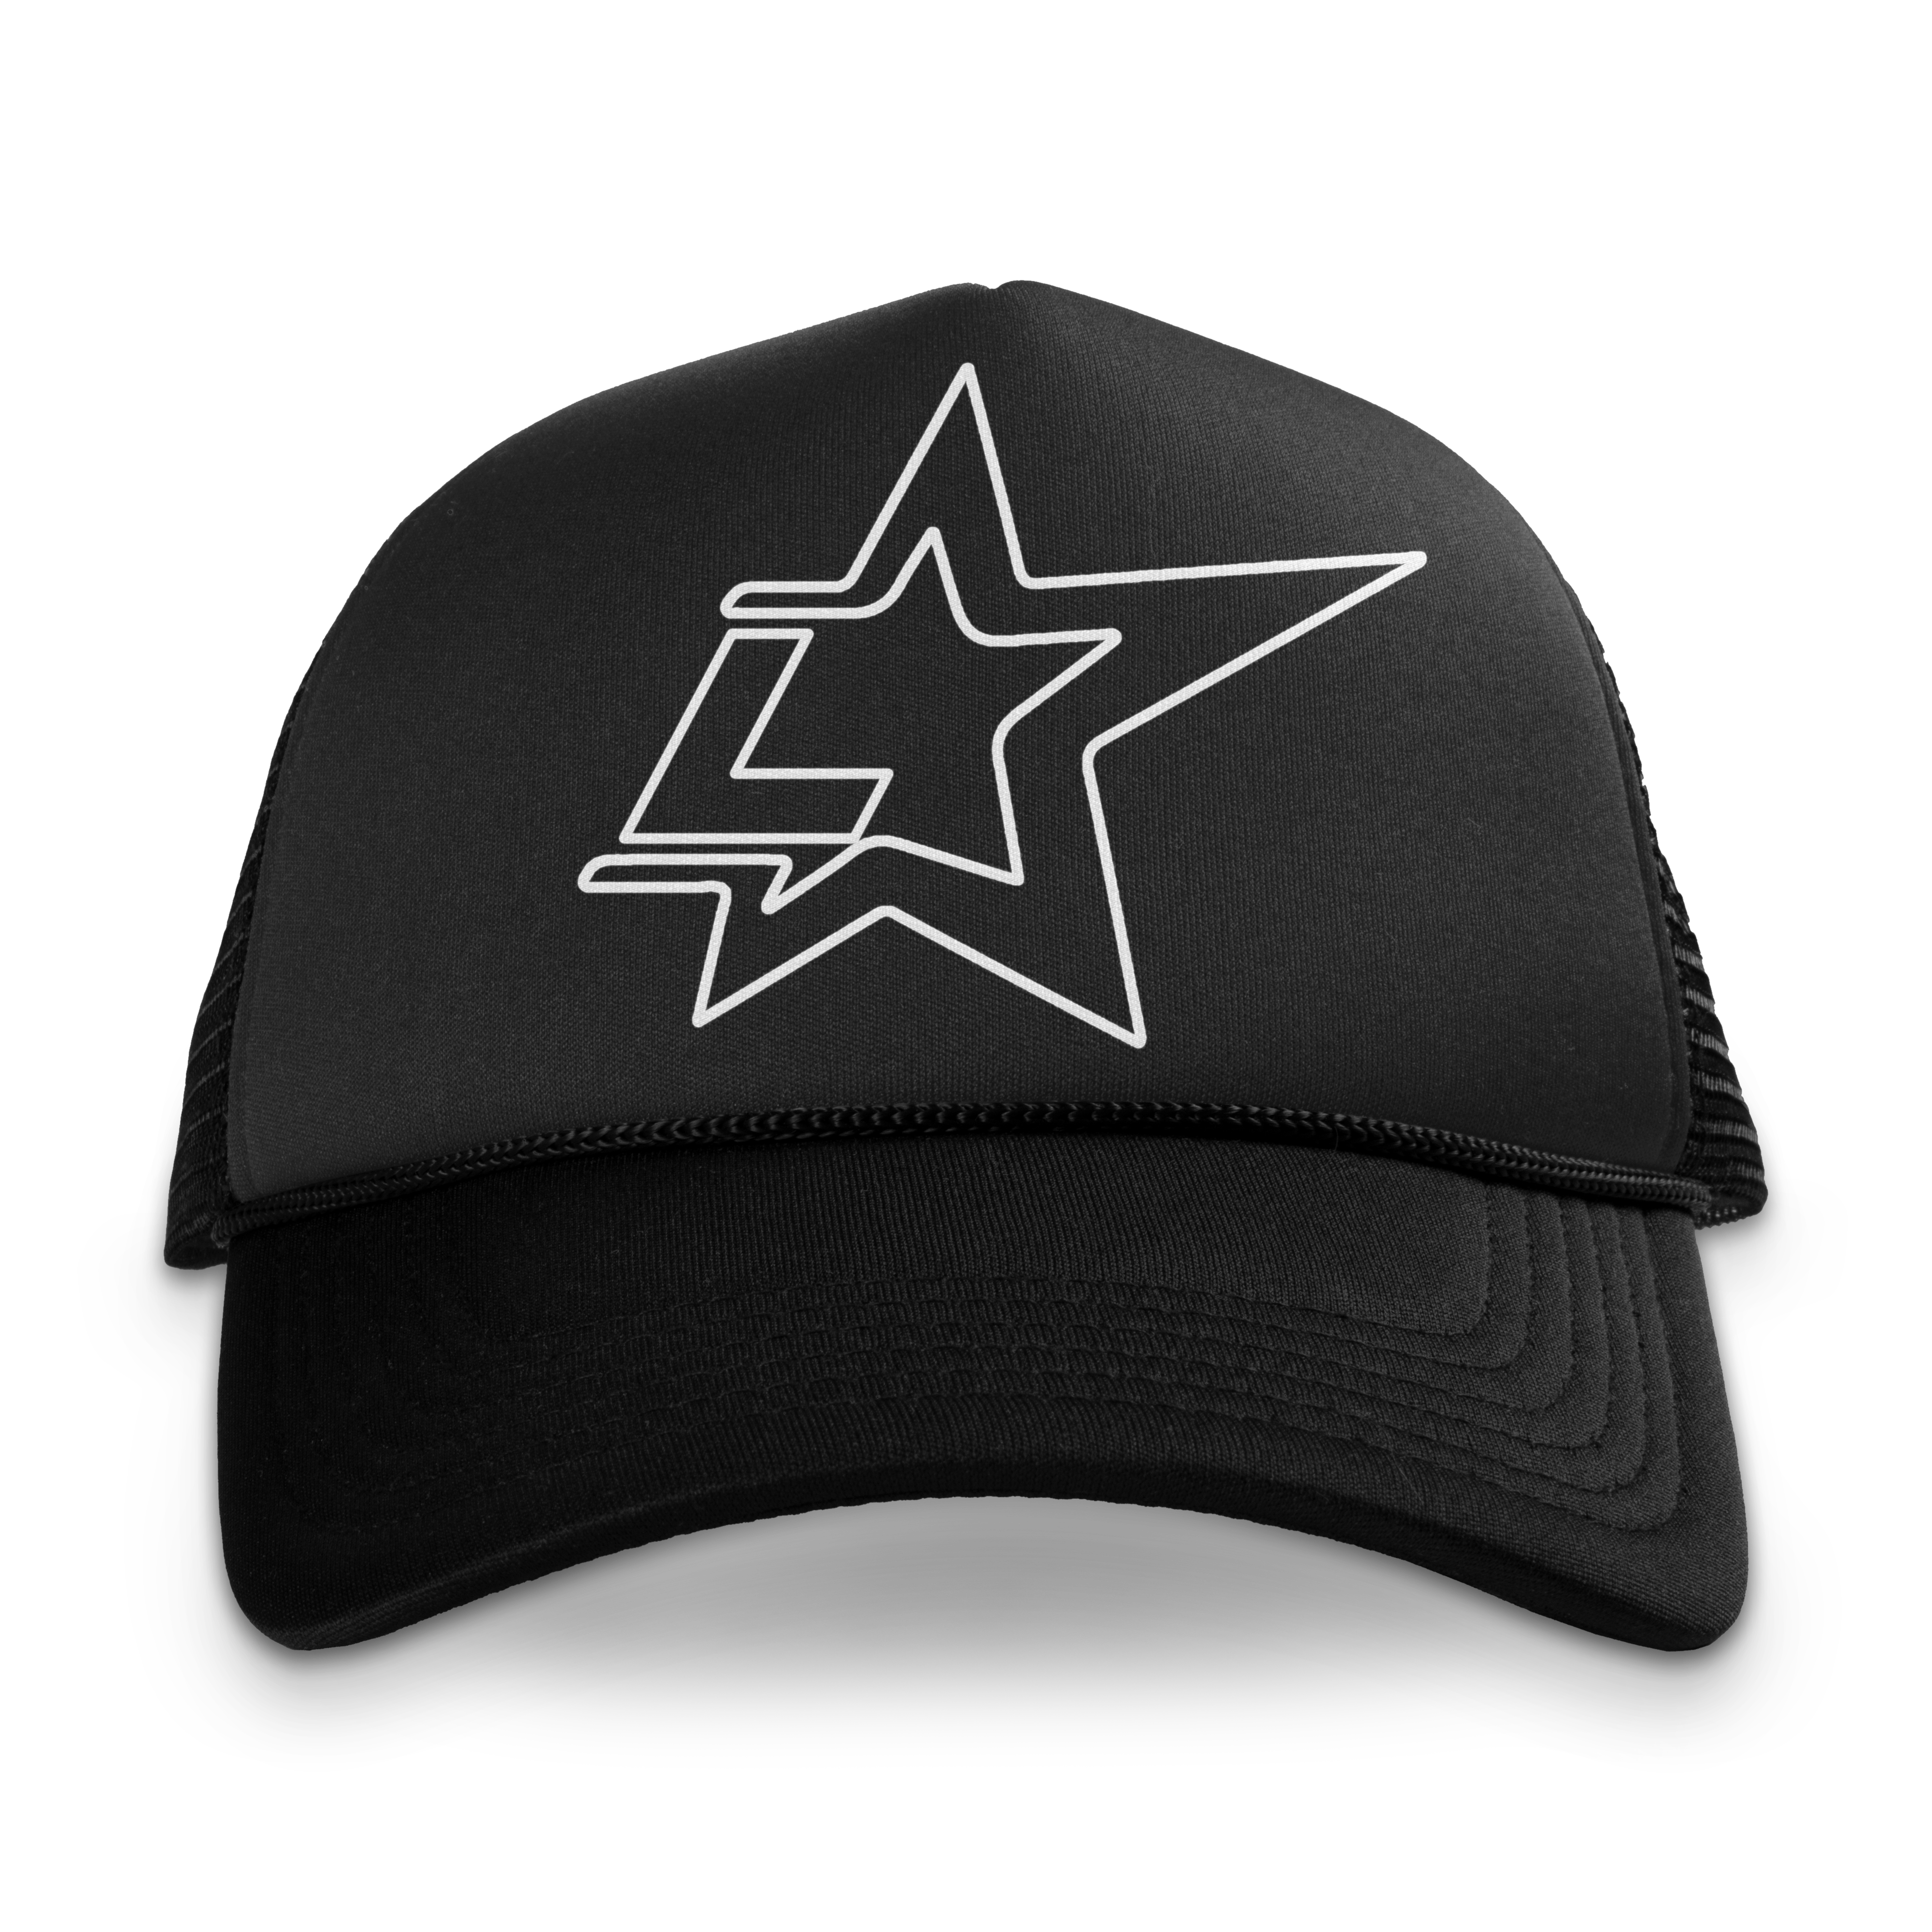 Copy of Lonestar Trucker Hat